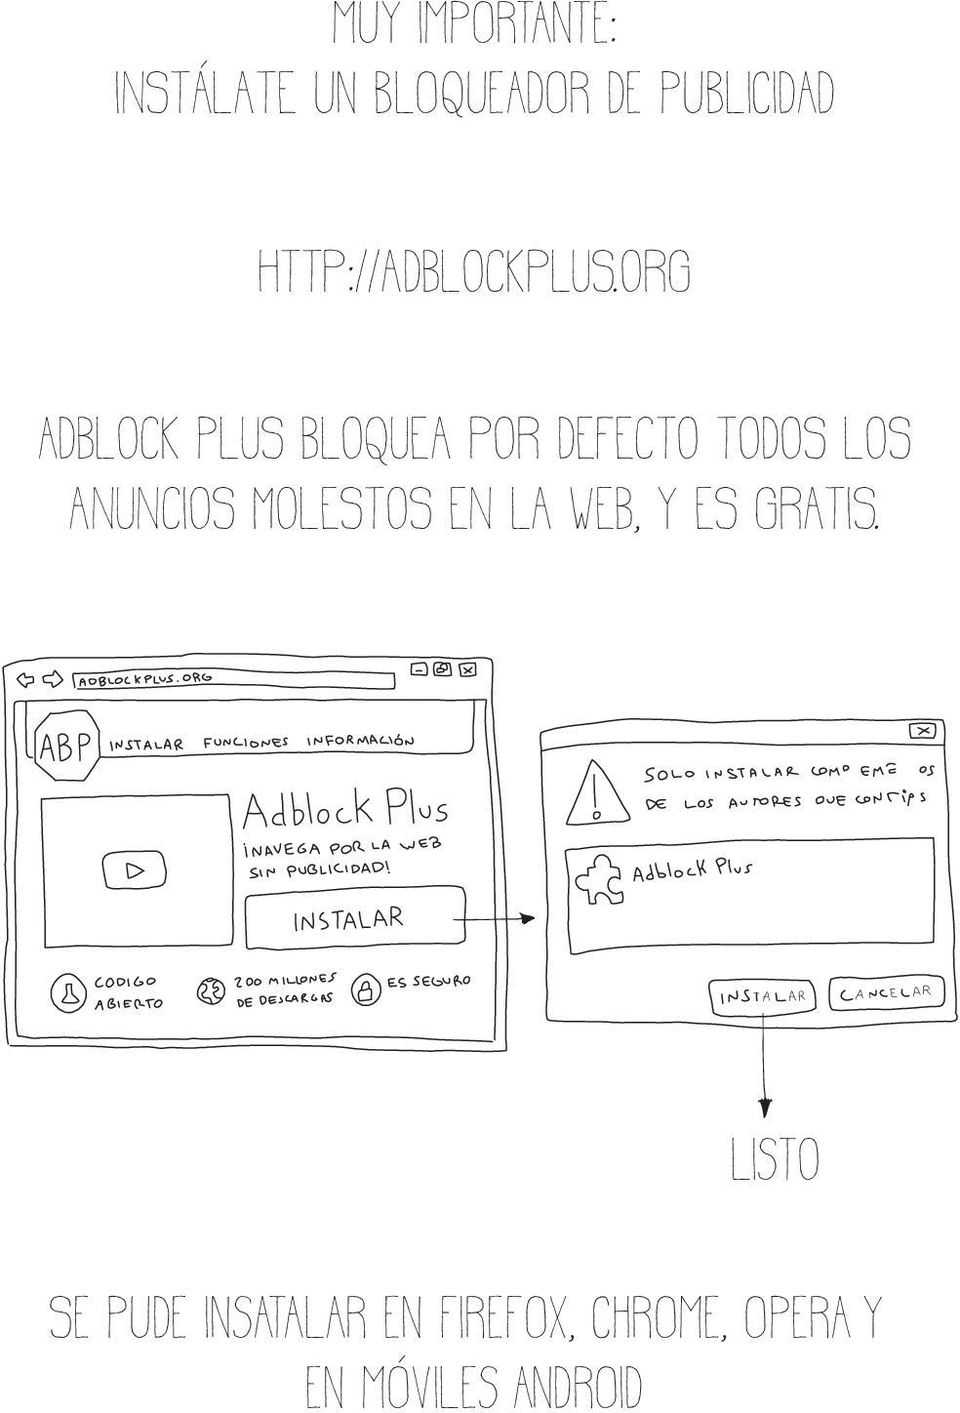 org Adblock Plus bloquea por defecto todos los anuncios